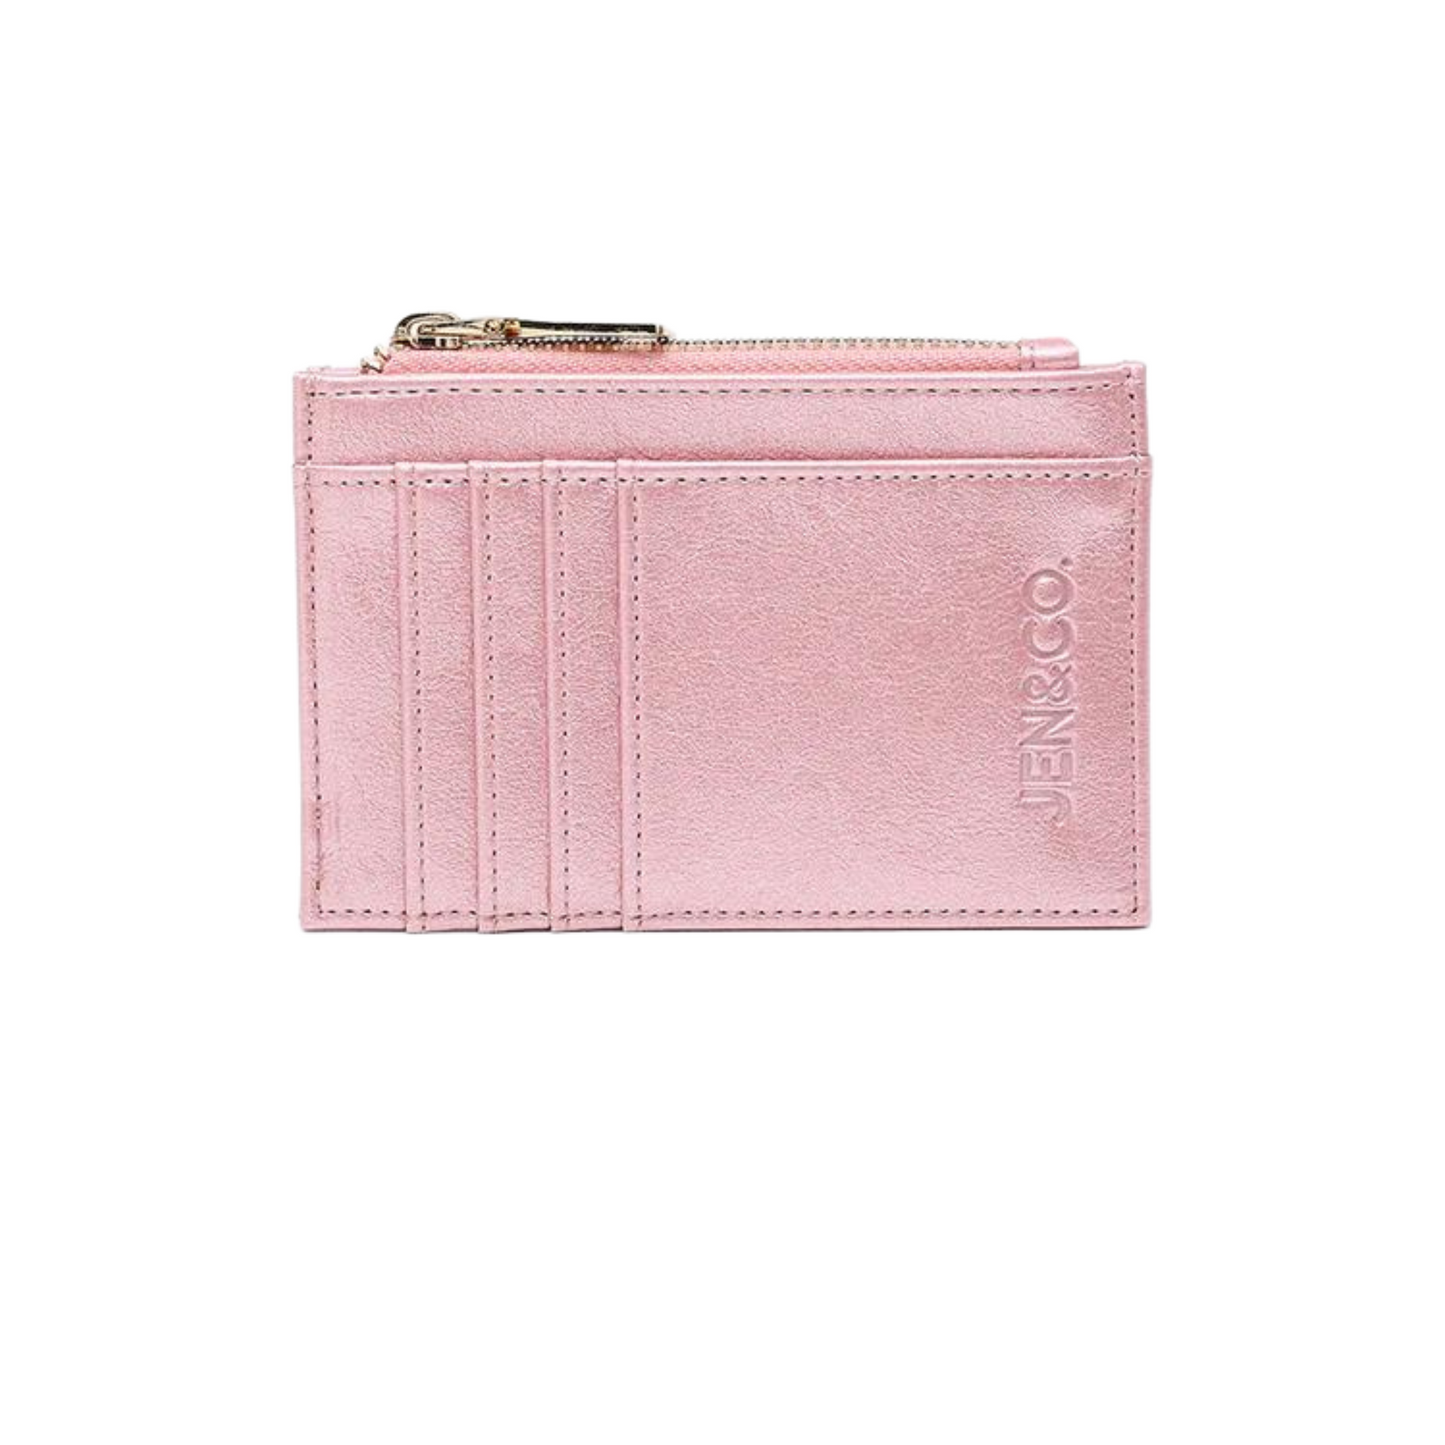 Sia Wallet in rose quartz